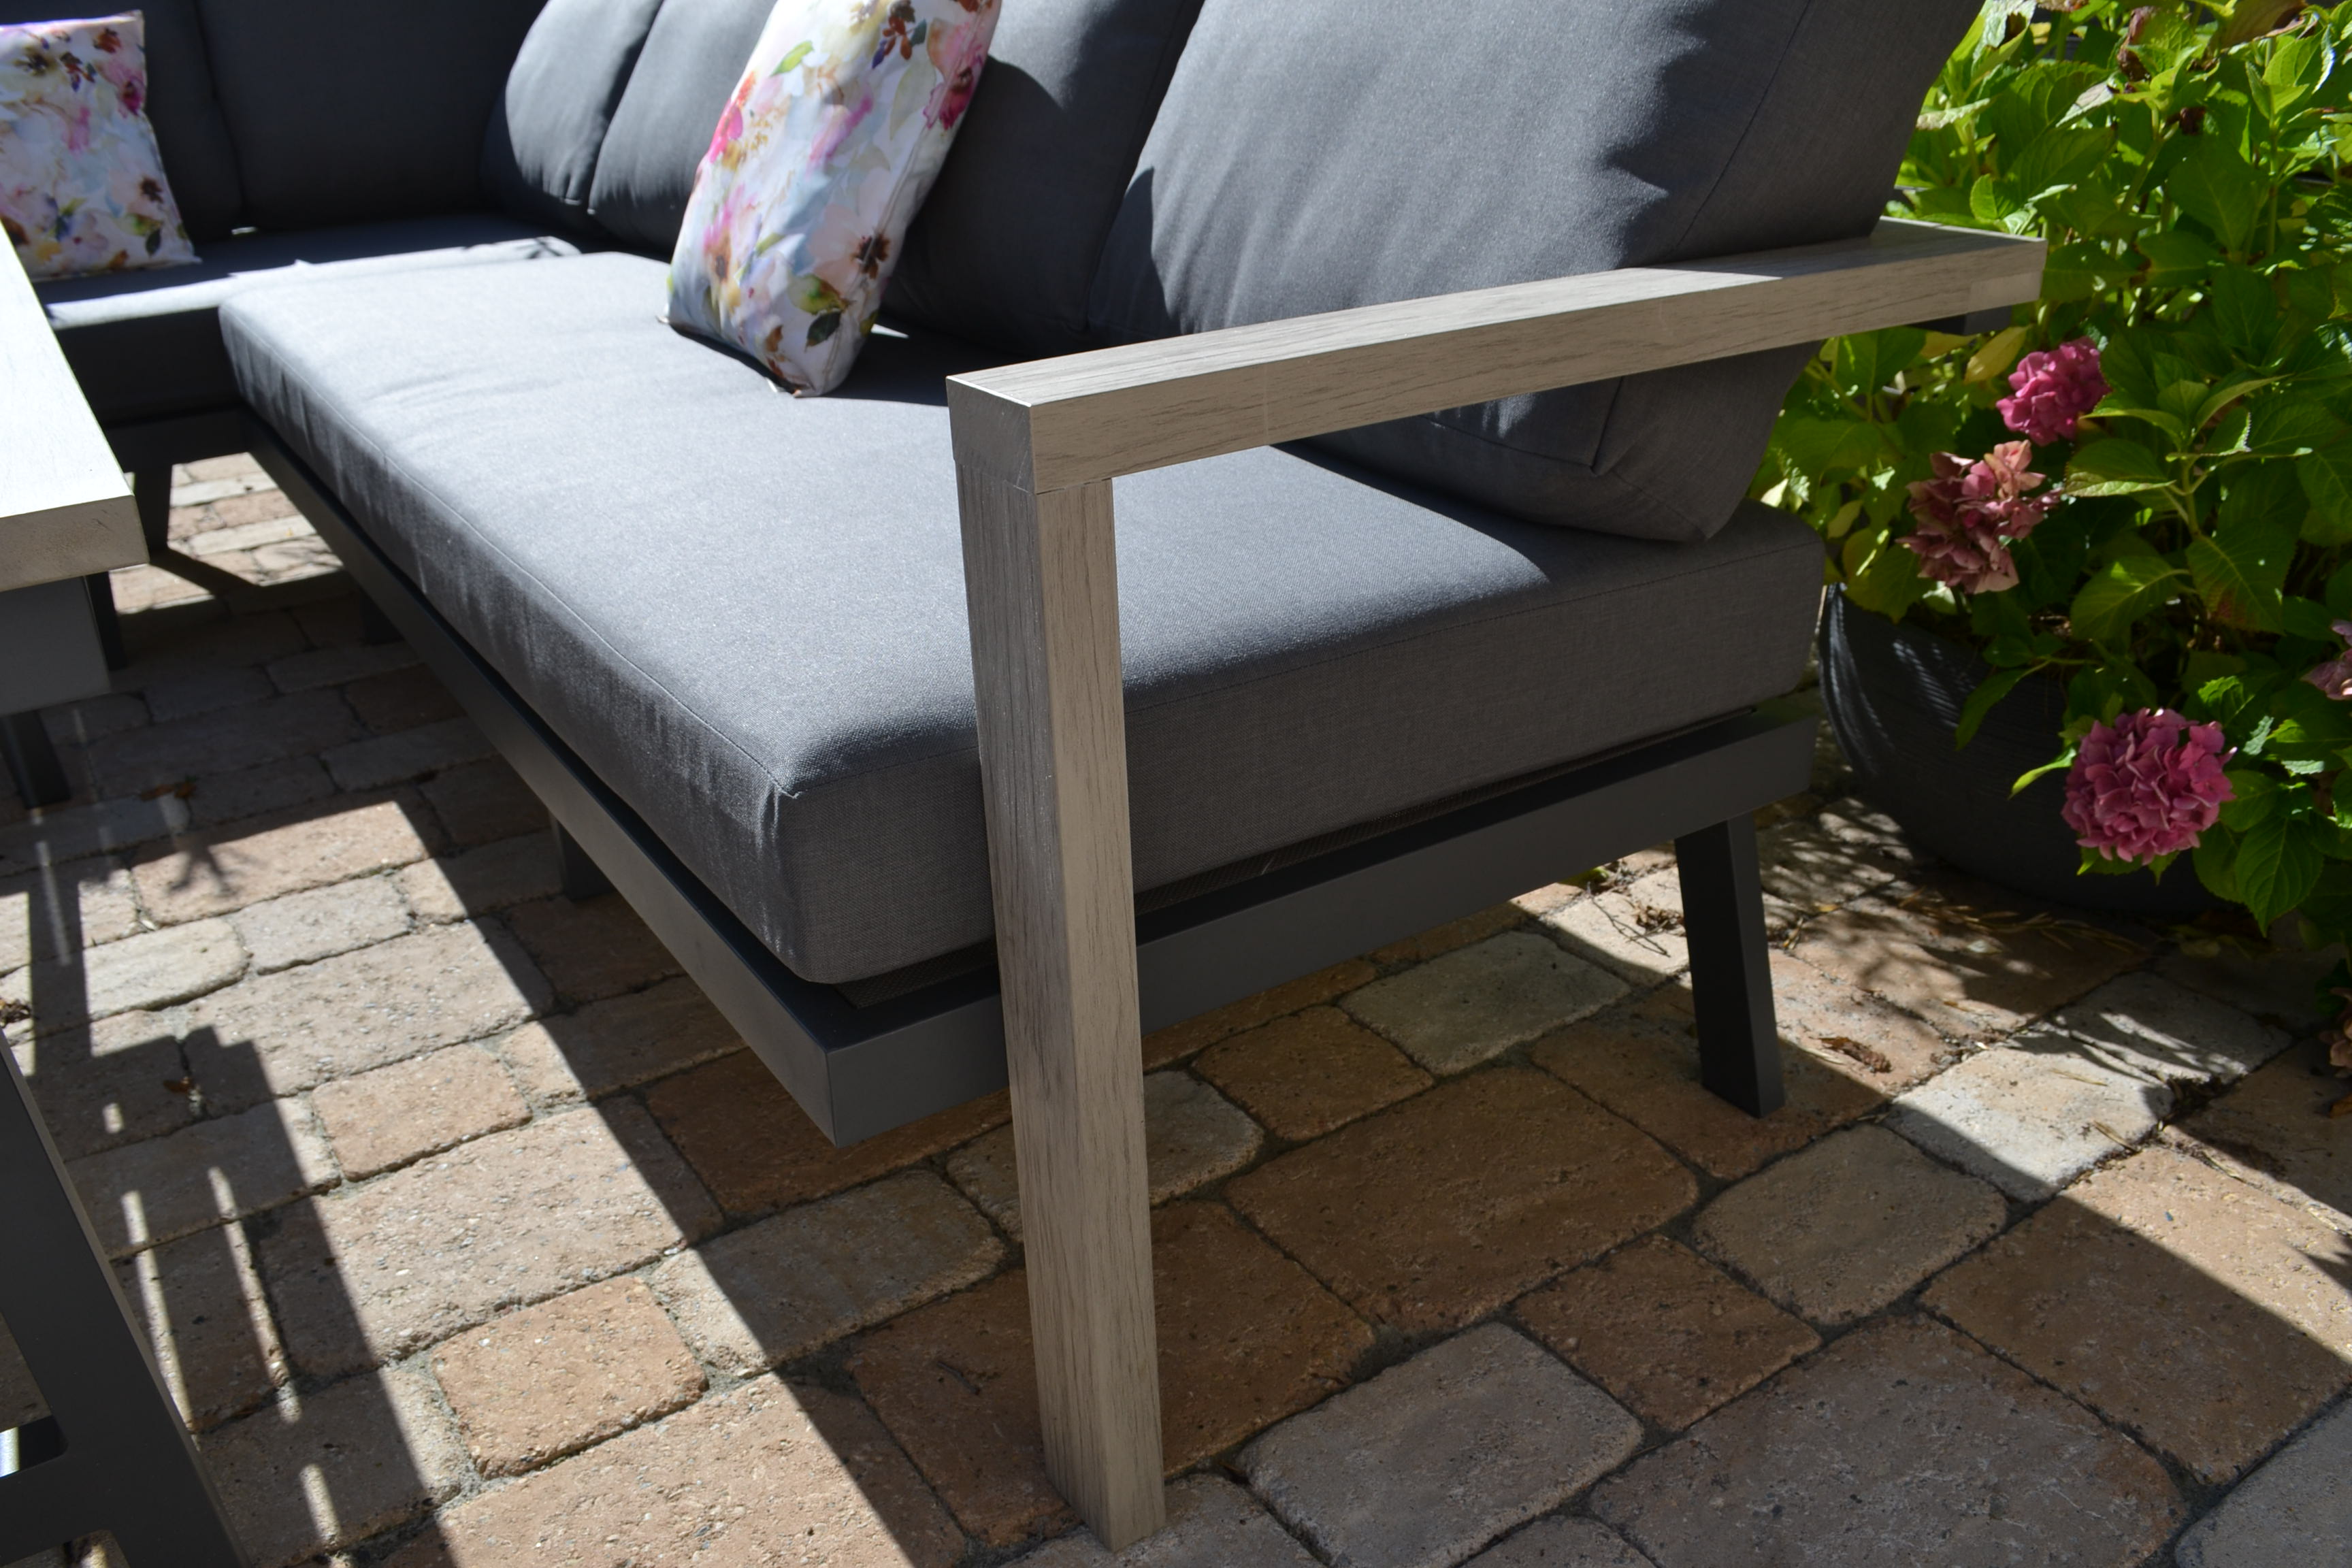 Garten Ecklounge Morgana + 1 Sessel + 2 Stühle Flavium + Tisch 165x100cm Grey - lange Seite rechts